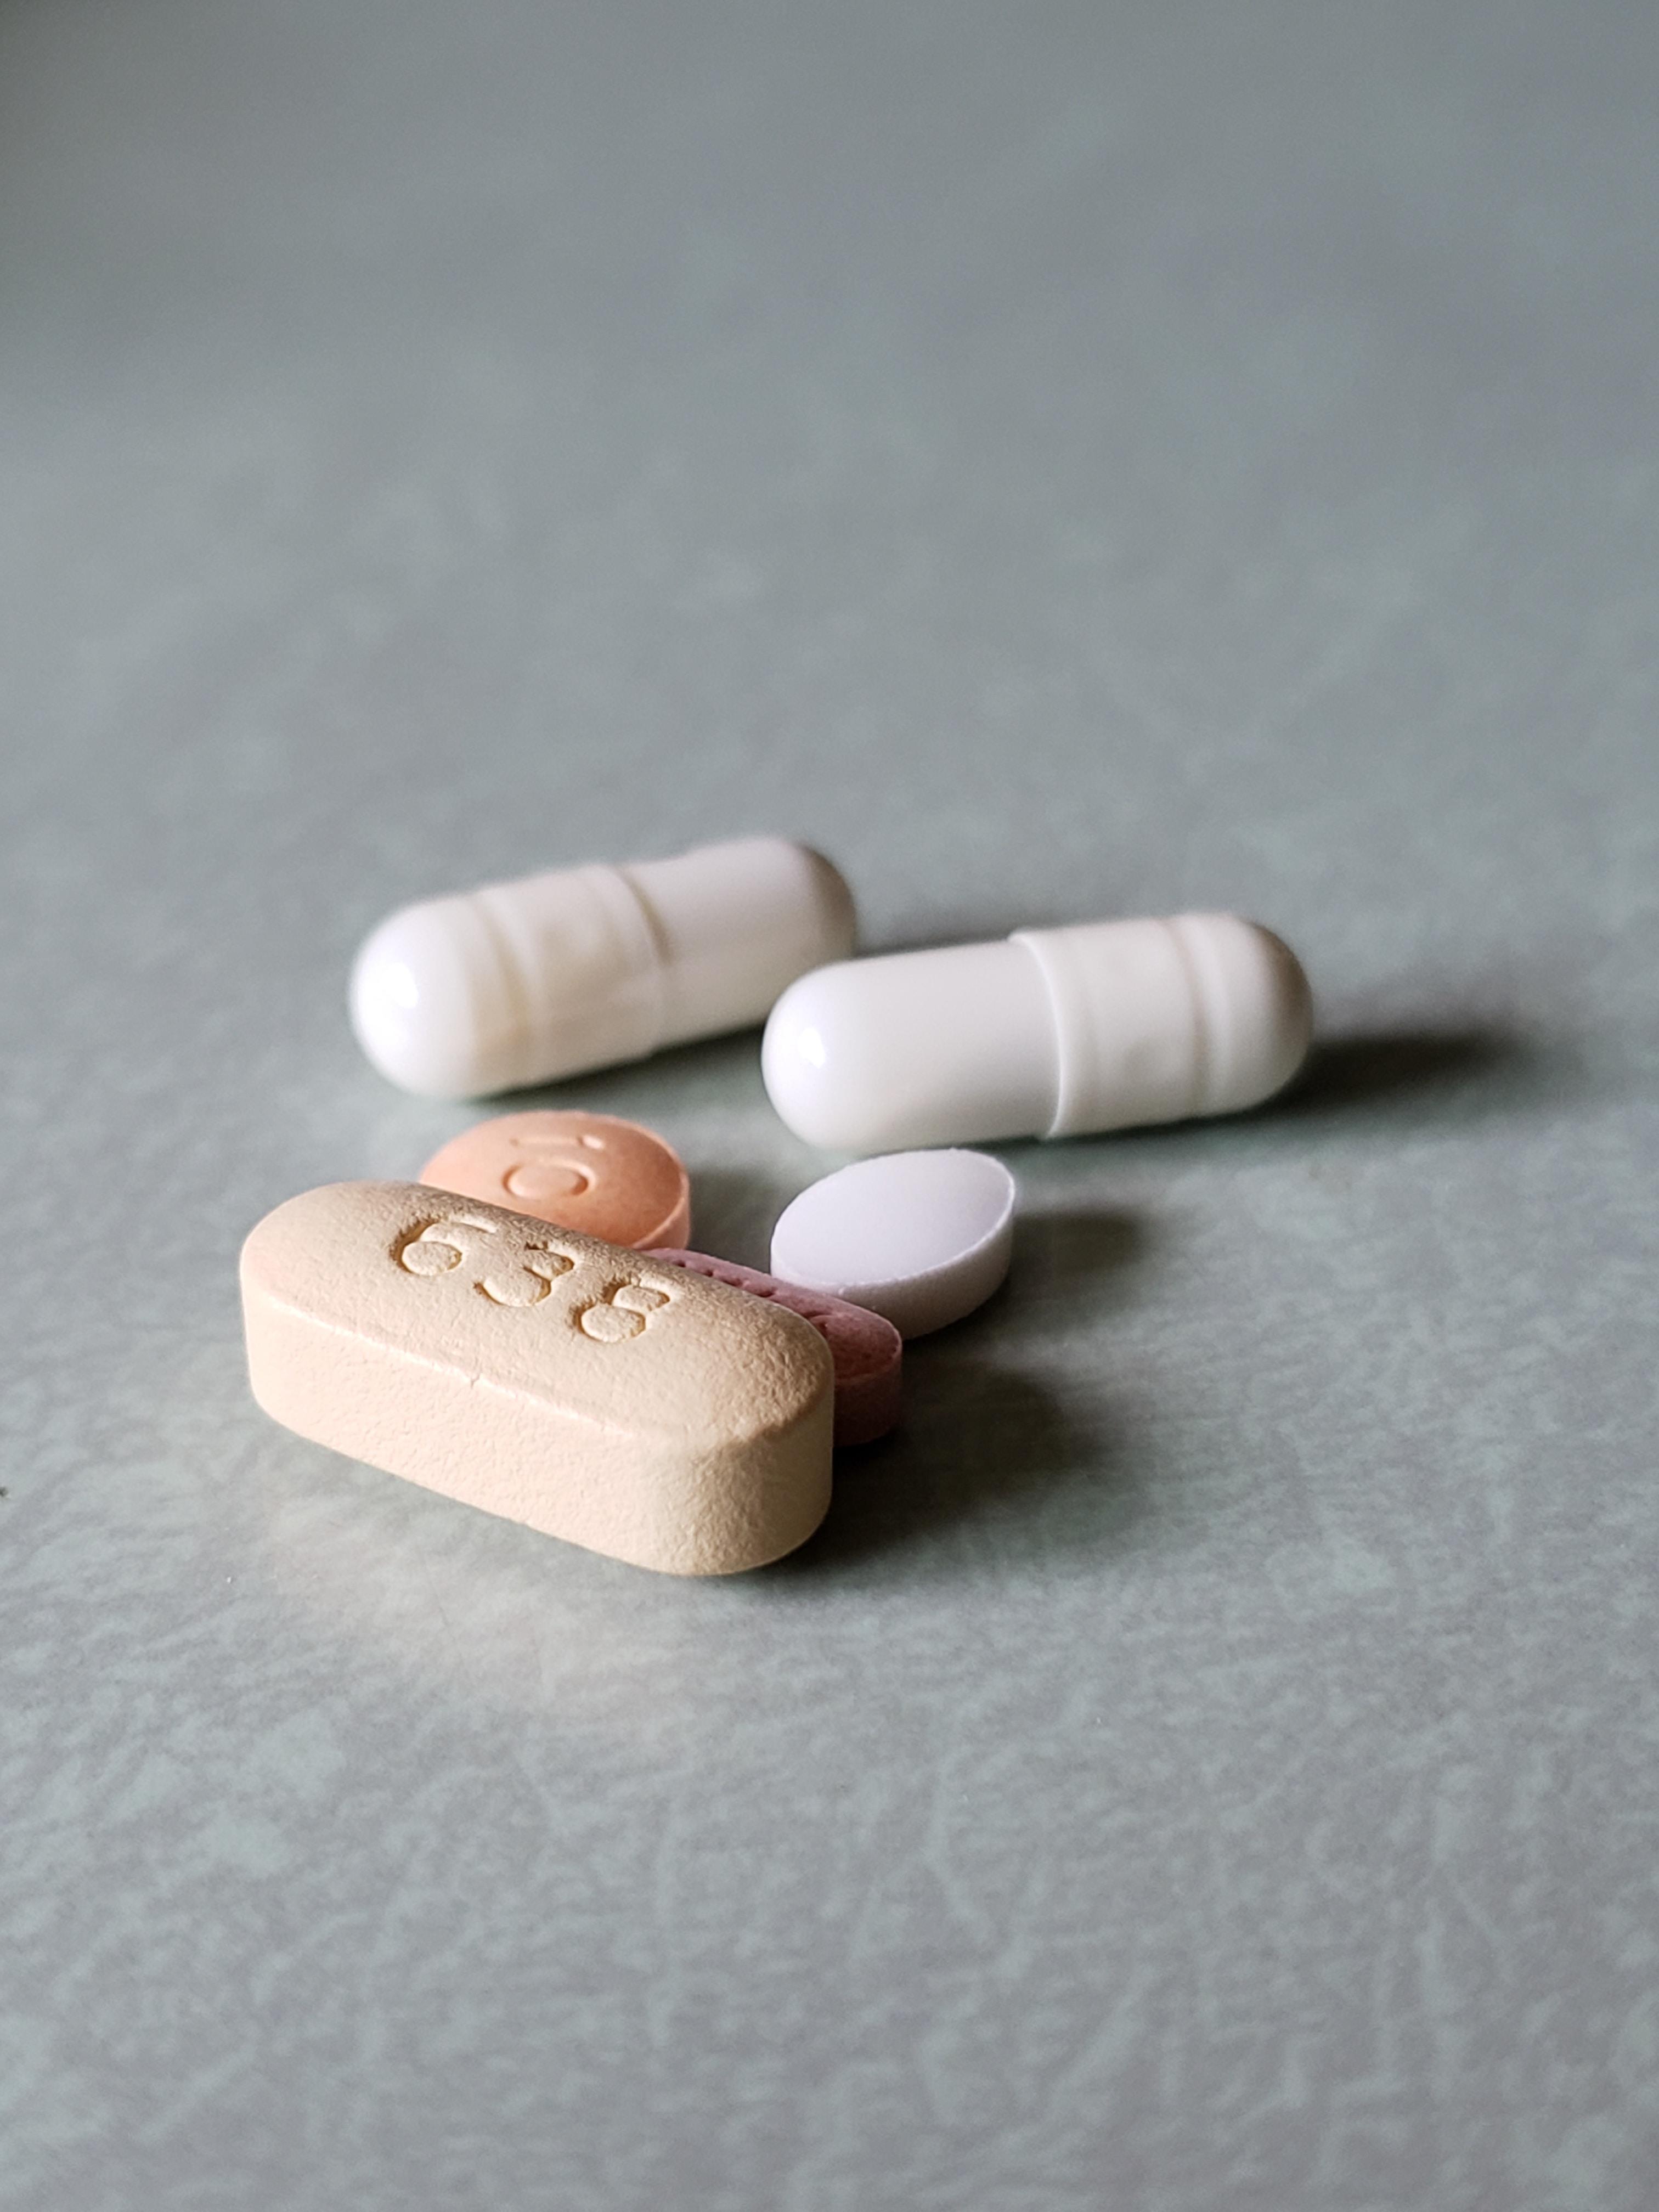 Antybiotykooporność - przyczyny oporności na antybiotyki ?